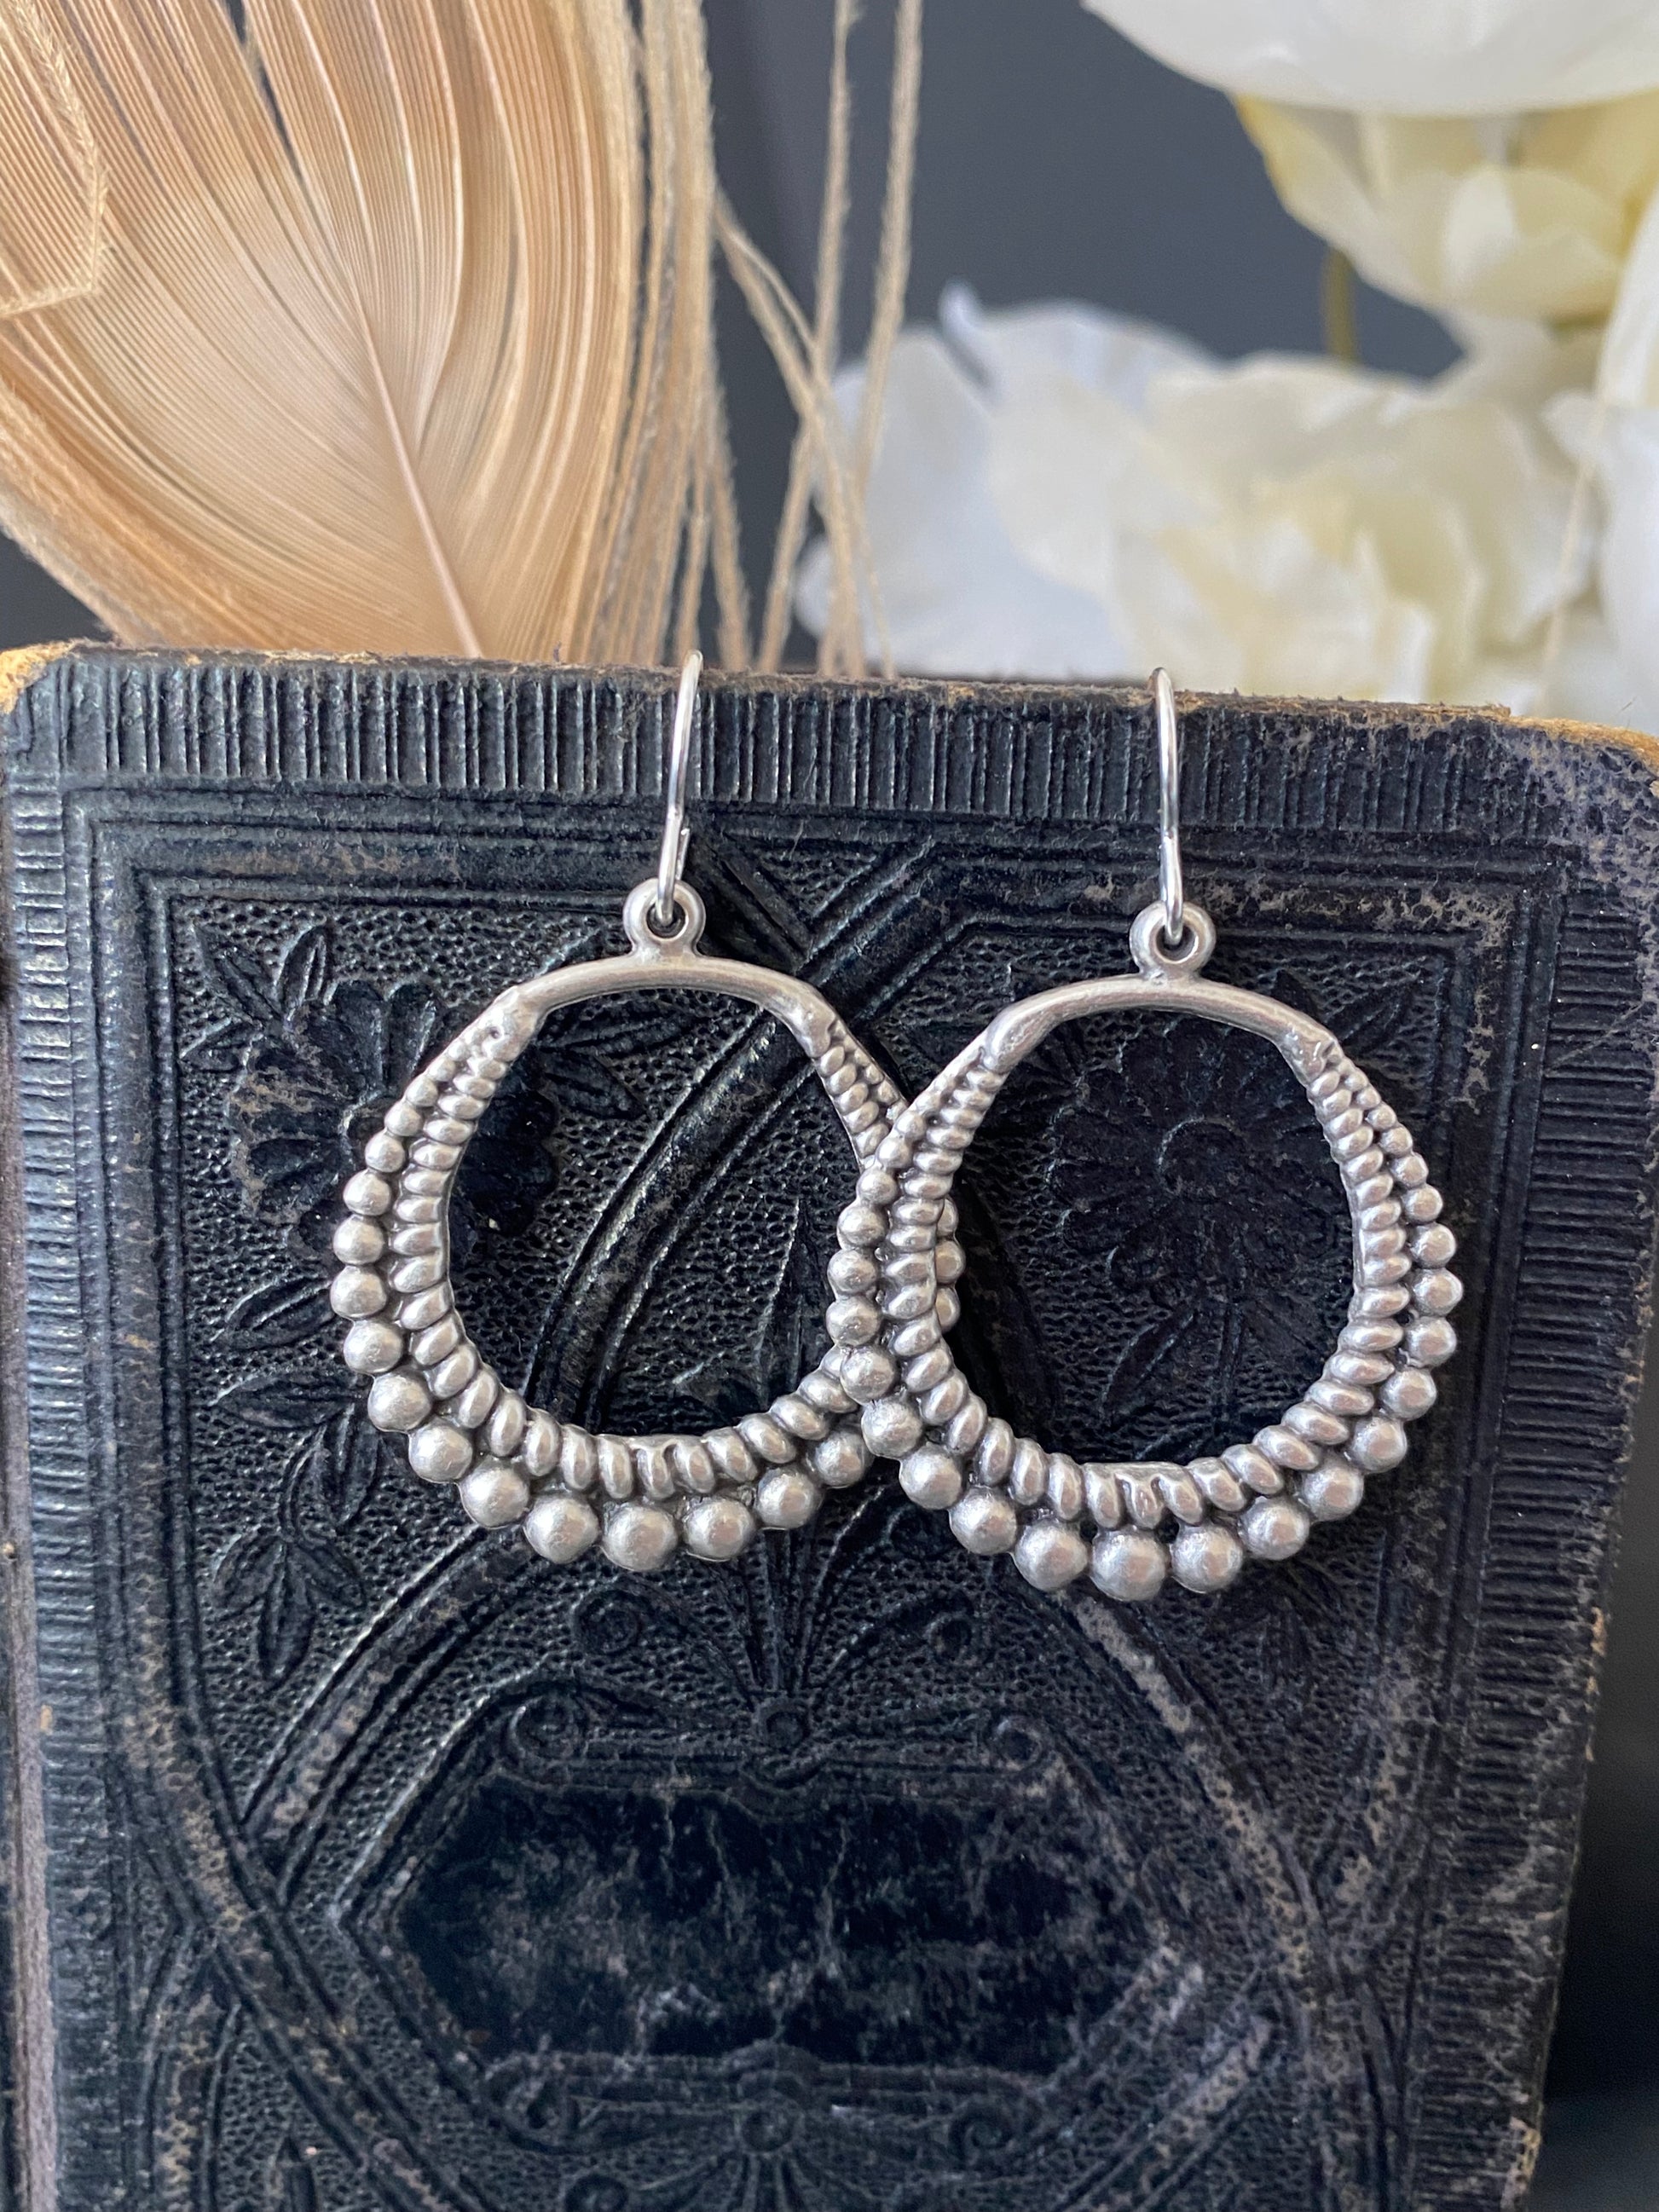 Polka dotted hoop earrings, Sterling silver jewelry - Andria Bieber Designs 